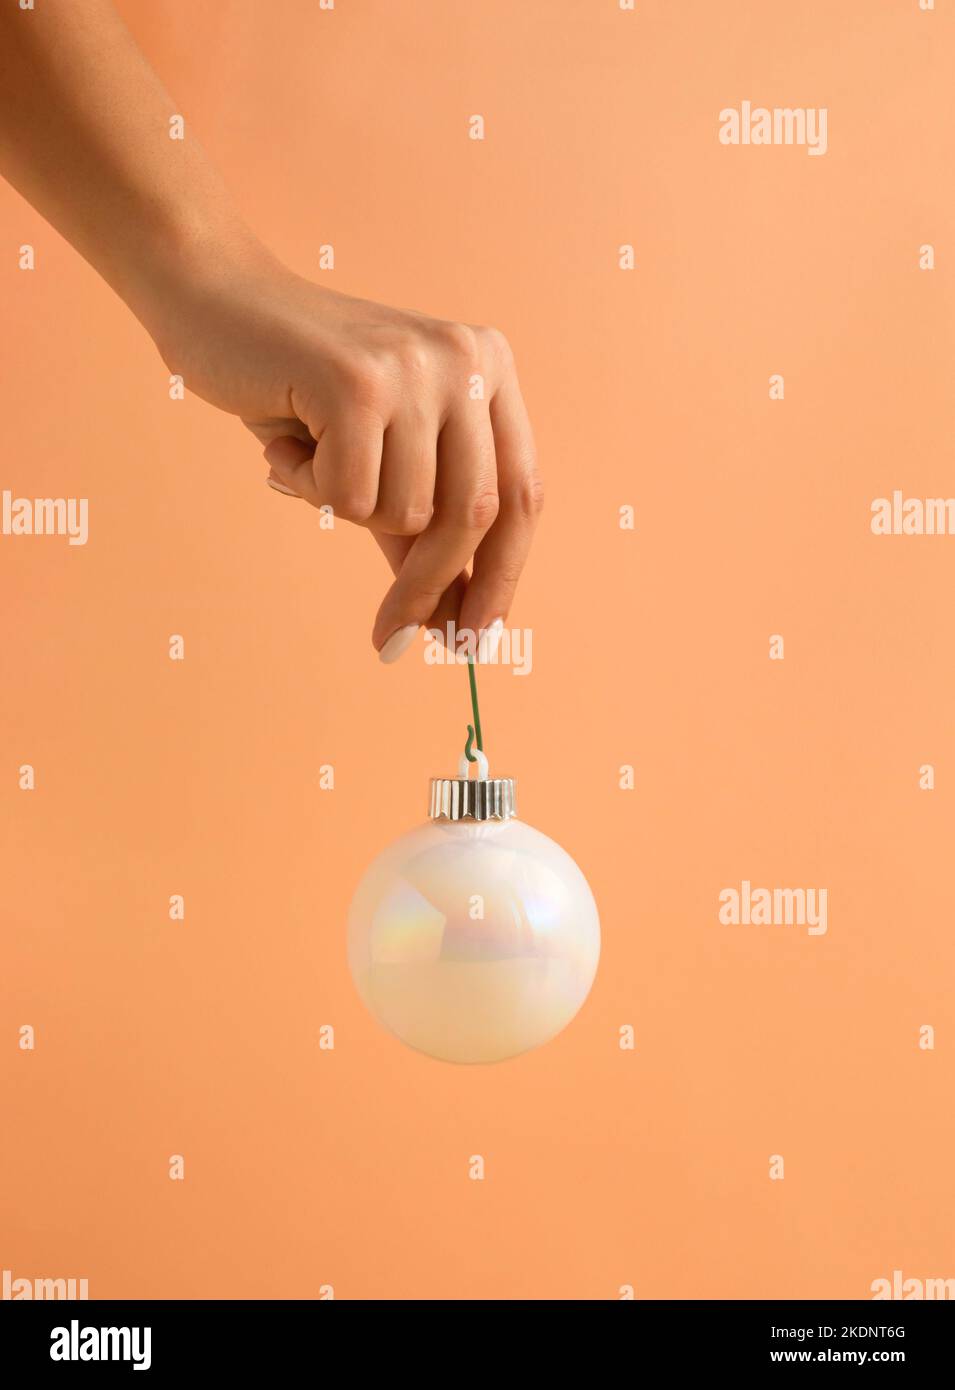 Composition de Noël minimaliste faite de la main de femme tenant blanc brillant boule de Noël sur fond orange pastel. Bonne Année. Banque D'Images